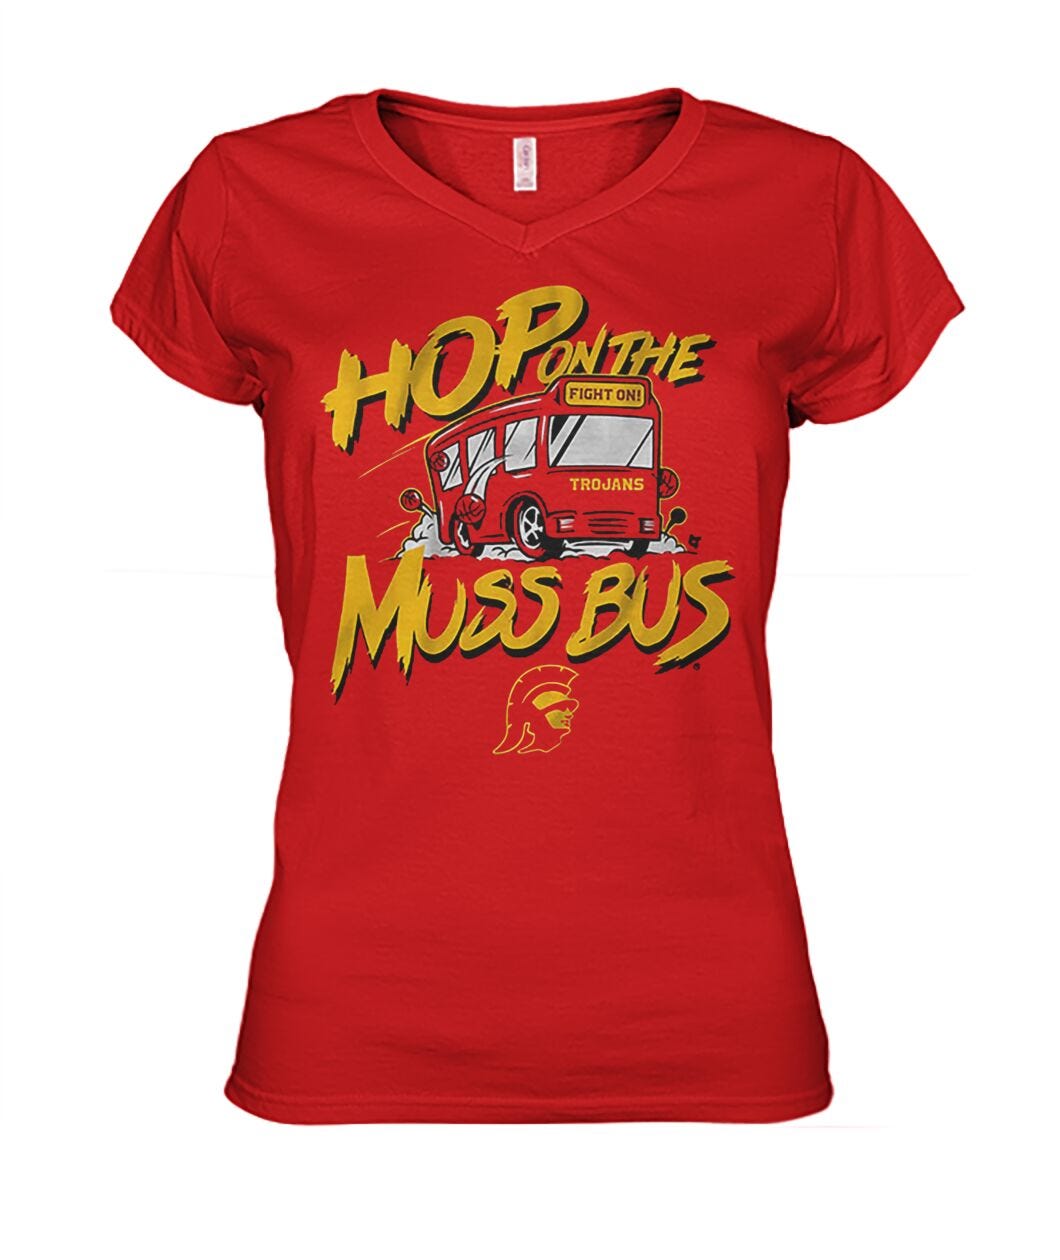 USC Basketball Hop on the Muss Bus Shirt | Medium